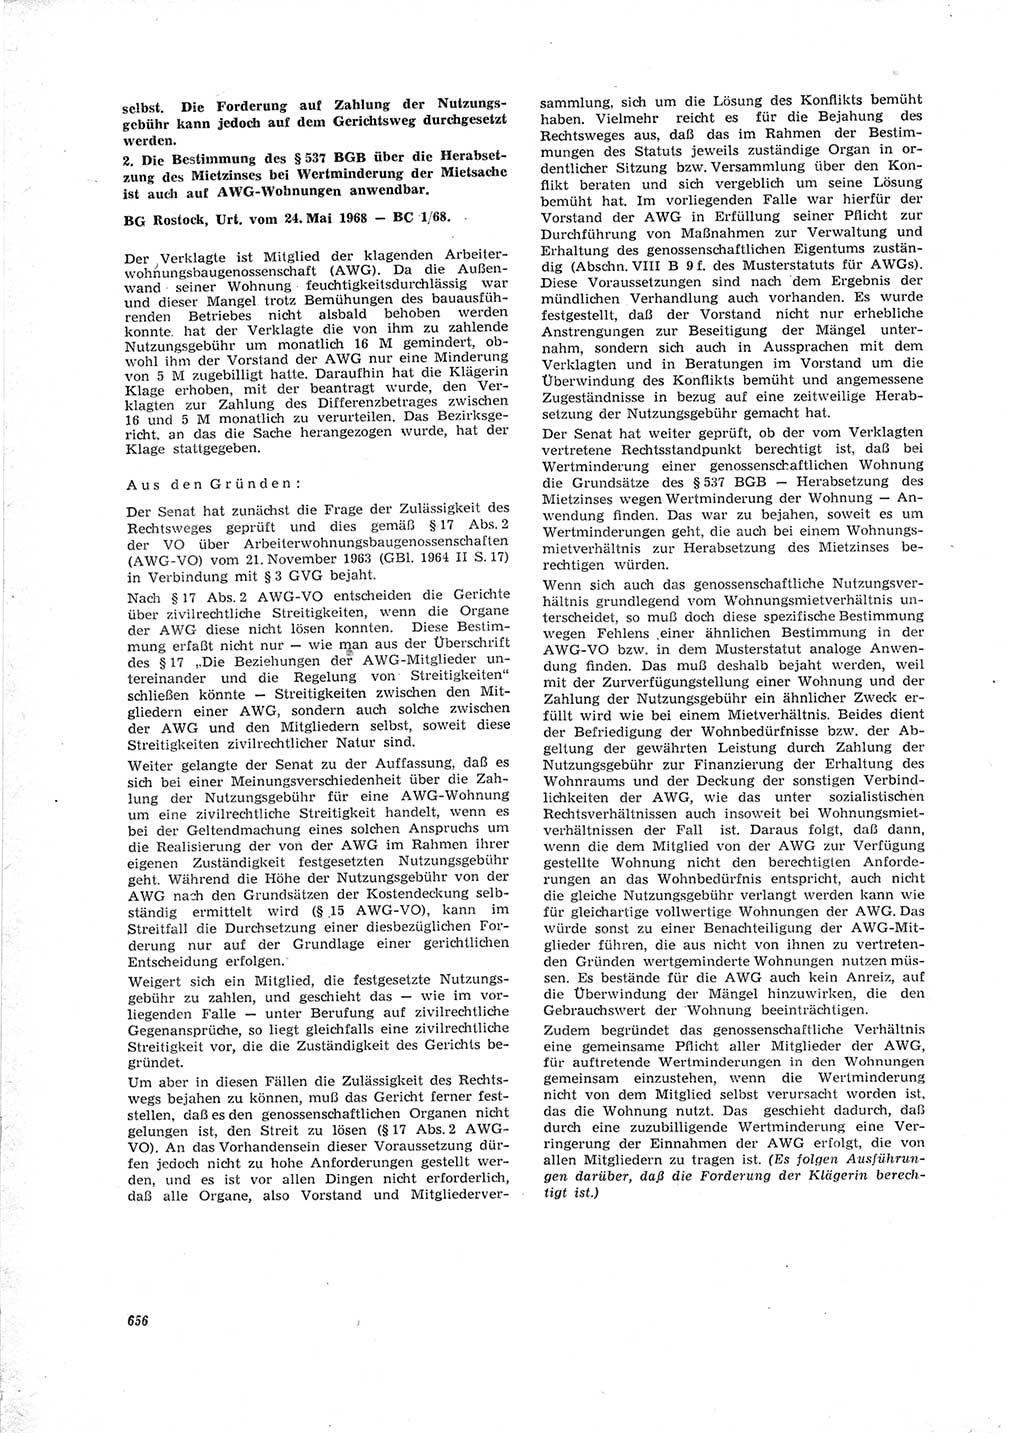 Neue Justiz (NJ), Zeitschrift für Recht und Rechtswissenschaft [Deutsche Demokratische Republik (DDR)], 23. Jahrgang 1969, Seite 656 (NJ DDR 1969, S. 656)